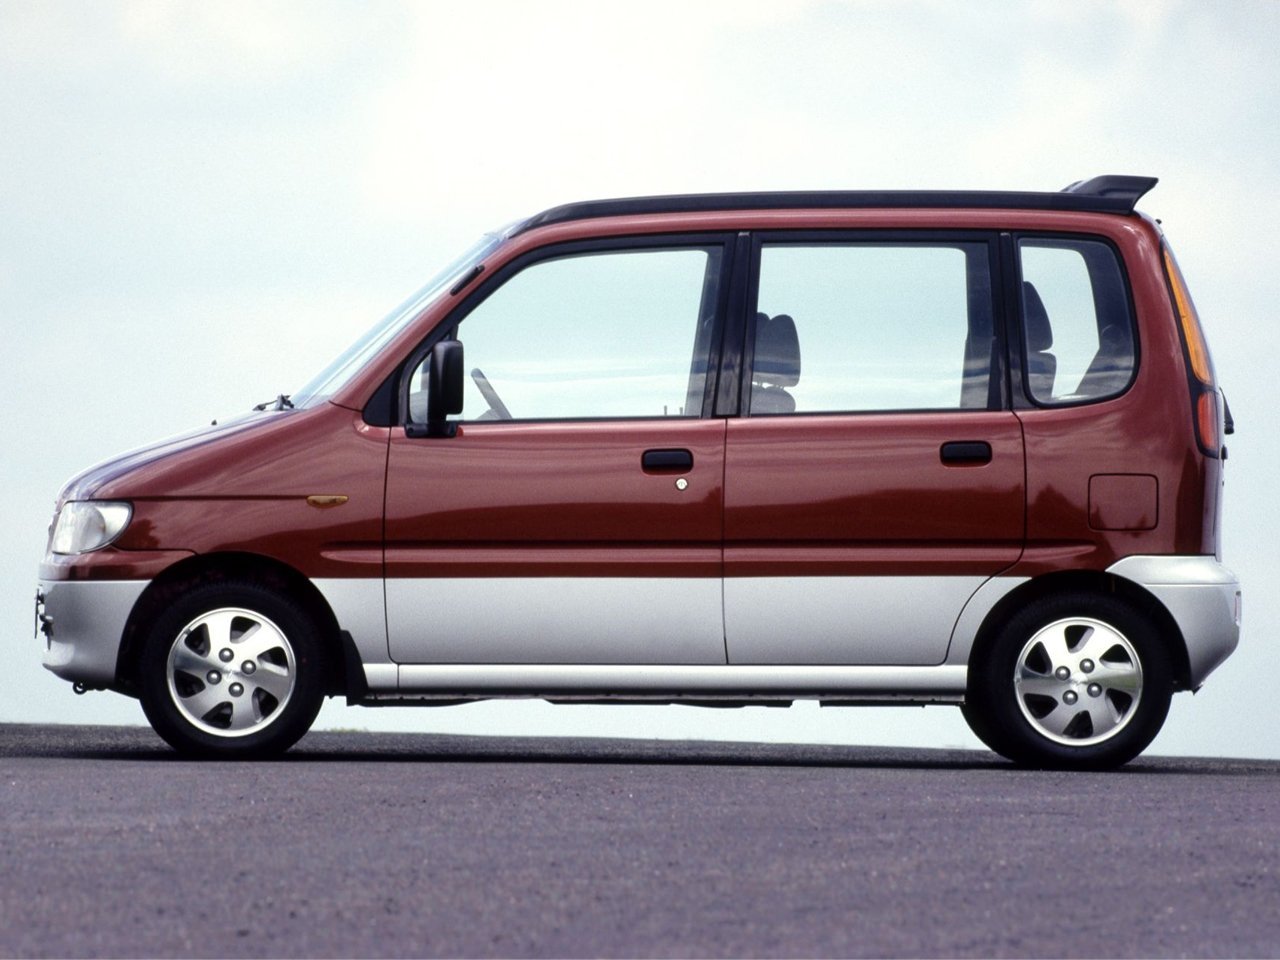 минивэн Daihatsu Move 1998 - 2009г выпуска модификация 0.7 AT (54 л.с.)